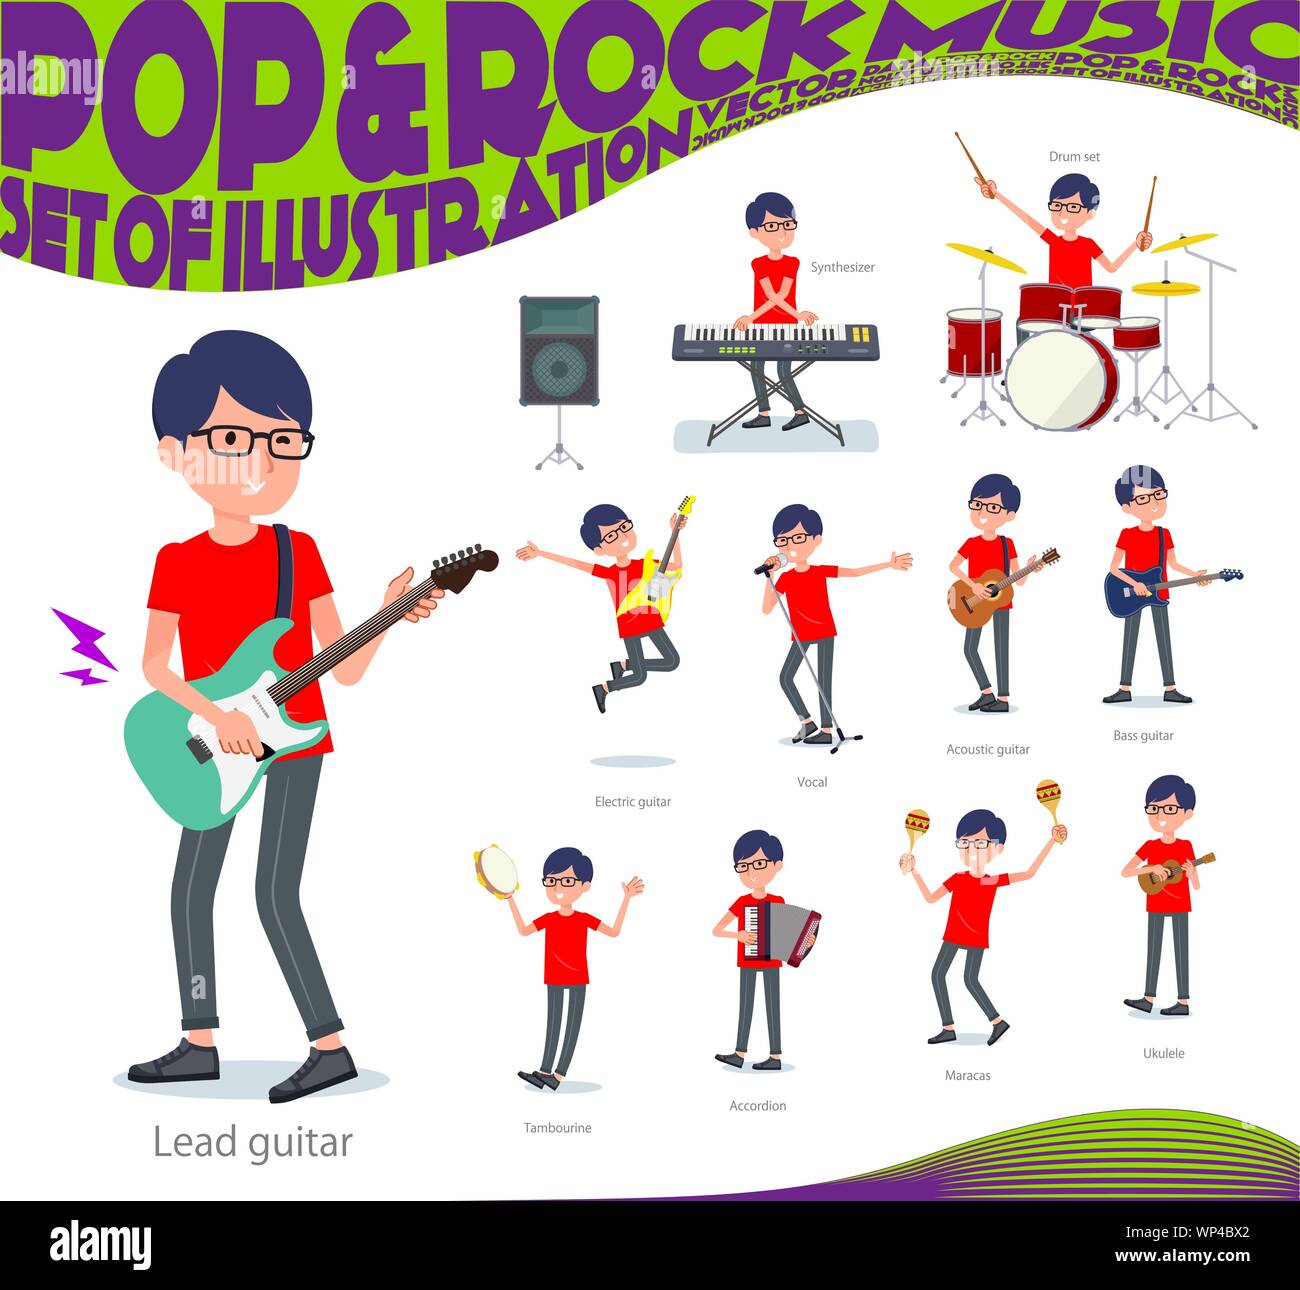 Ein rotes T-shirt Mann spielt Rock'n'Roll und Pop Musik. Es gibt auch verschiedene Instrumente wie Ukulele und Tamburin. Es ist Vektor Kunst so ist es Stock Vektor